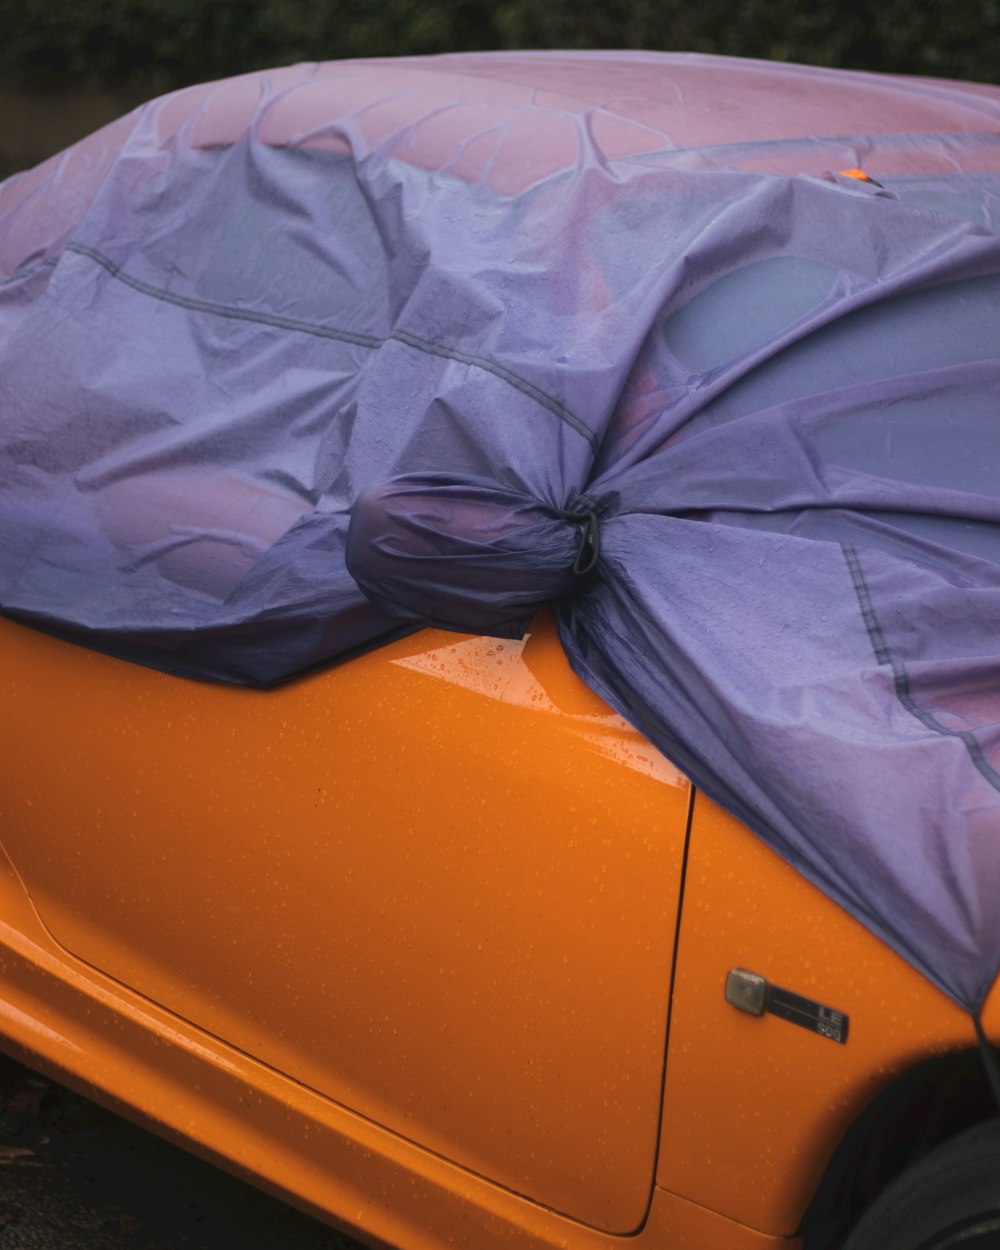 blue umbrella on orange car